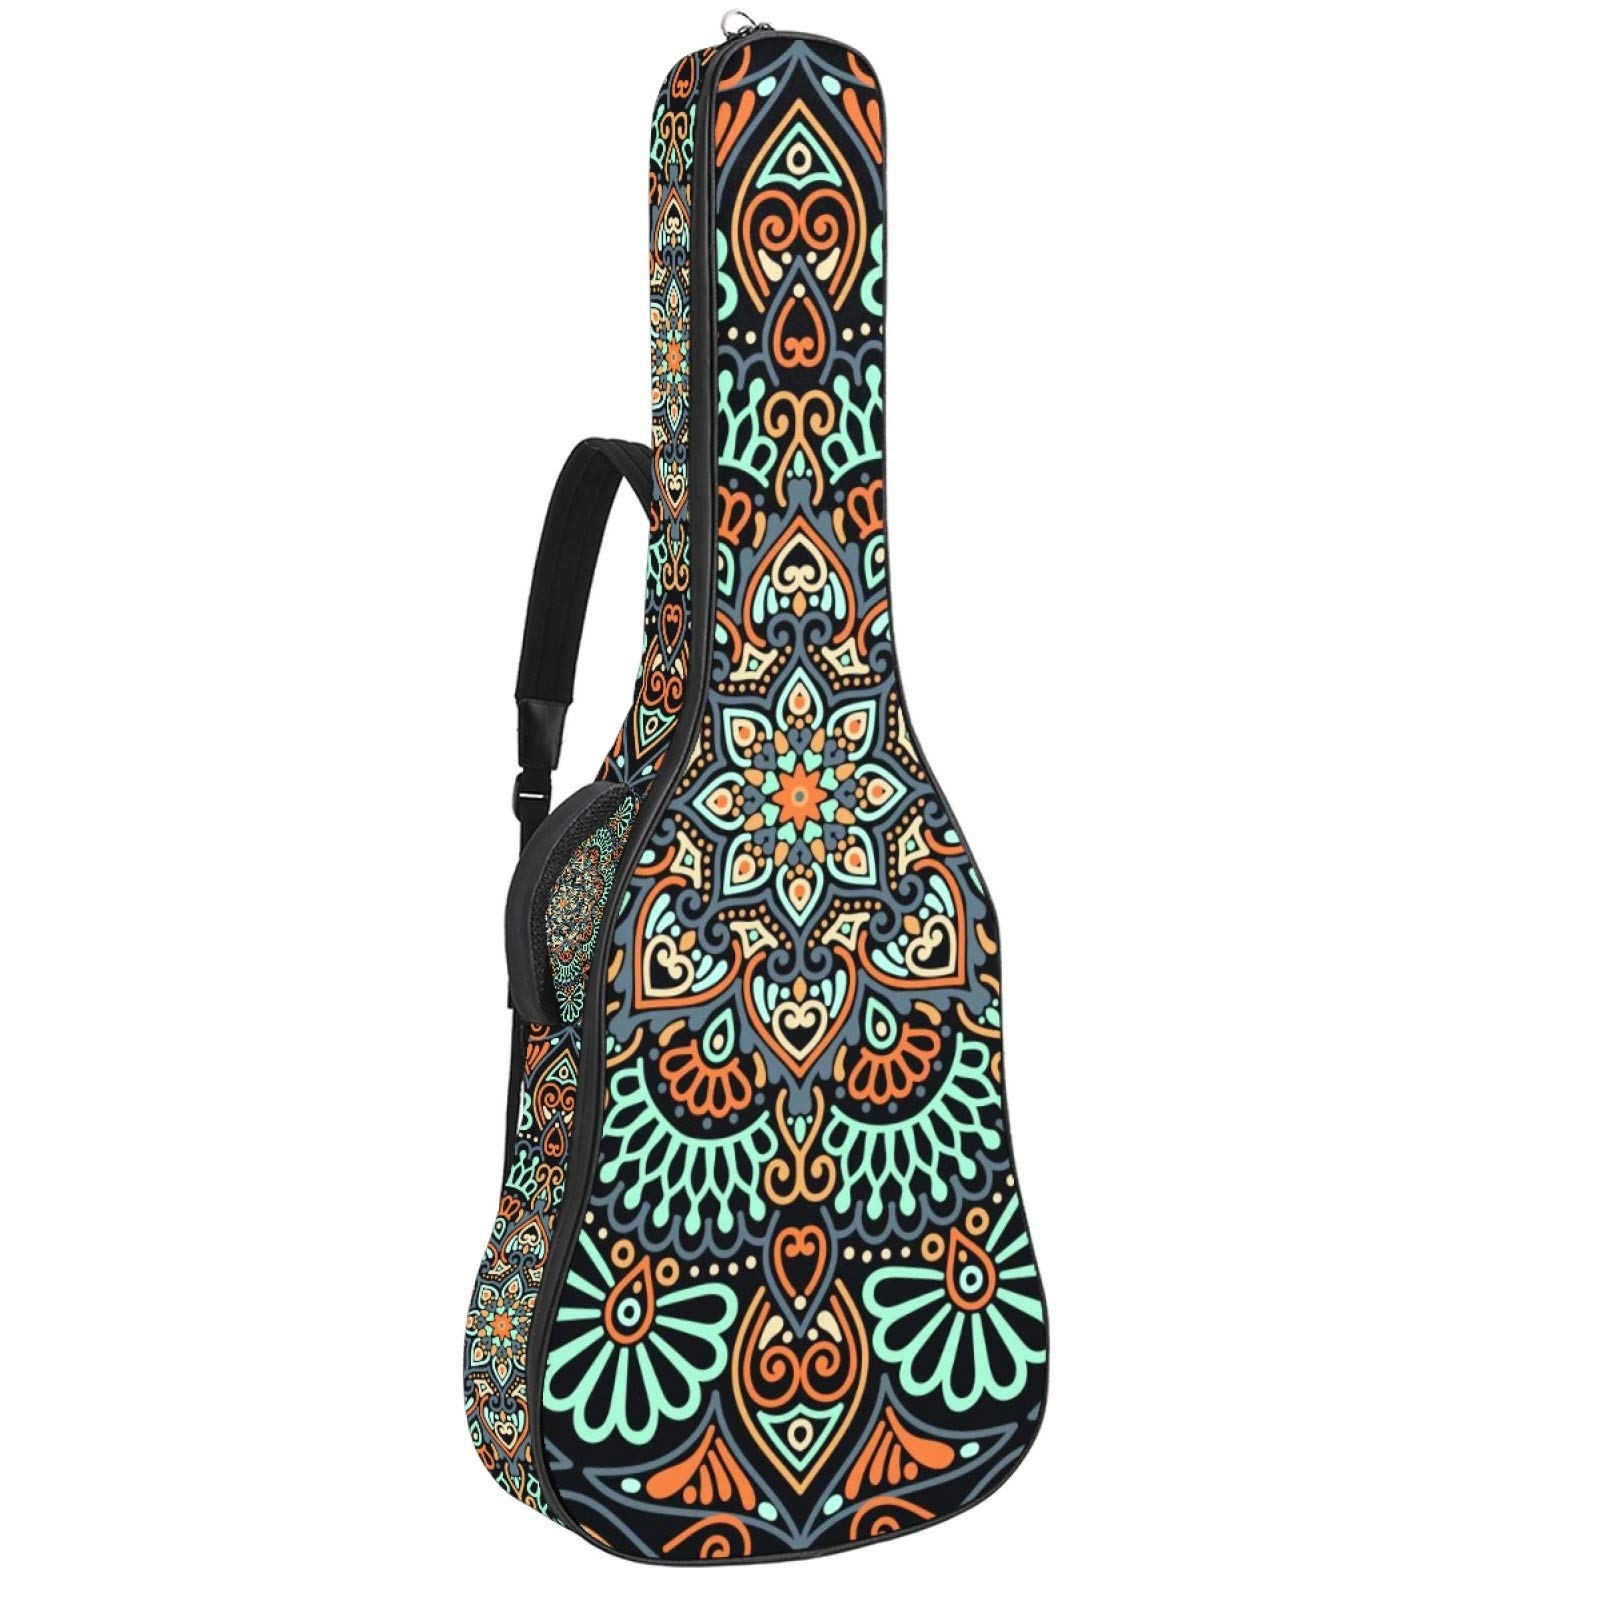 Gitarren-Gigbag, wasserdicht, Reißverschluss, weich, für Bassgitarre, Akustik- und klassische Folk-Gitarre, Vintage-Mandala-Blumenmuster